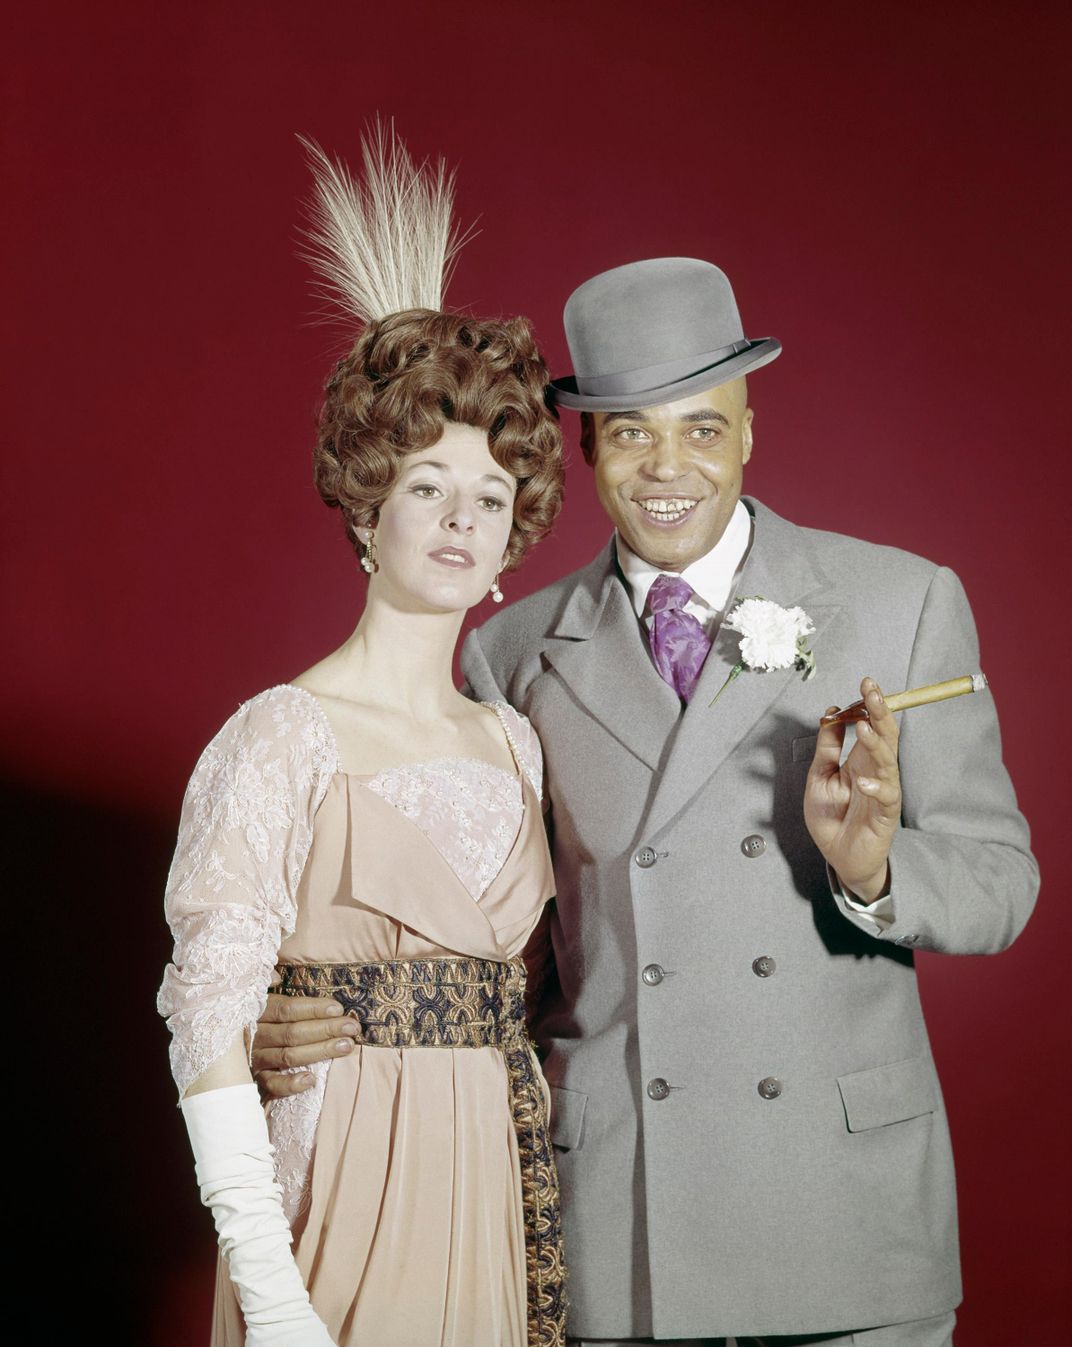 Jane Alexander and James Earl Jones in costume